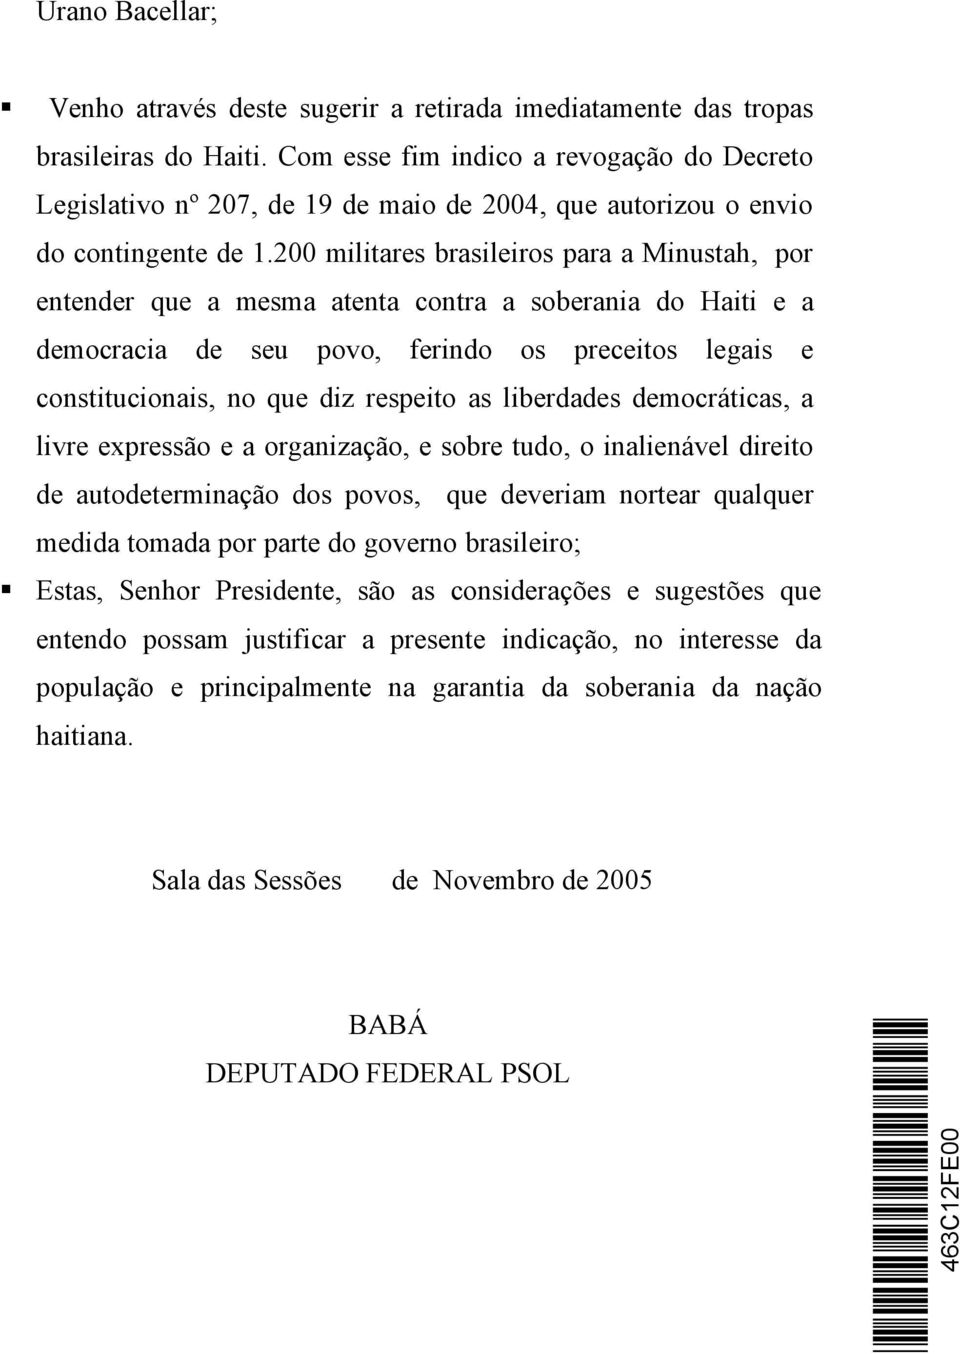 200 militares brasileiros para a Minustah, por entender que a mesma atenta contra a soberania do Haiti e a democracia de seu povo, ferindo os preceitos legais e constitucionais, no que diz respeito